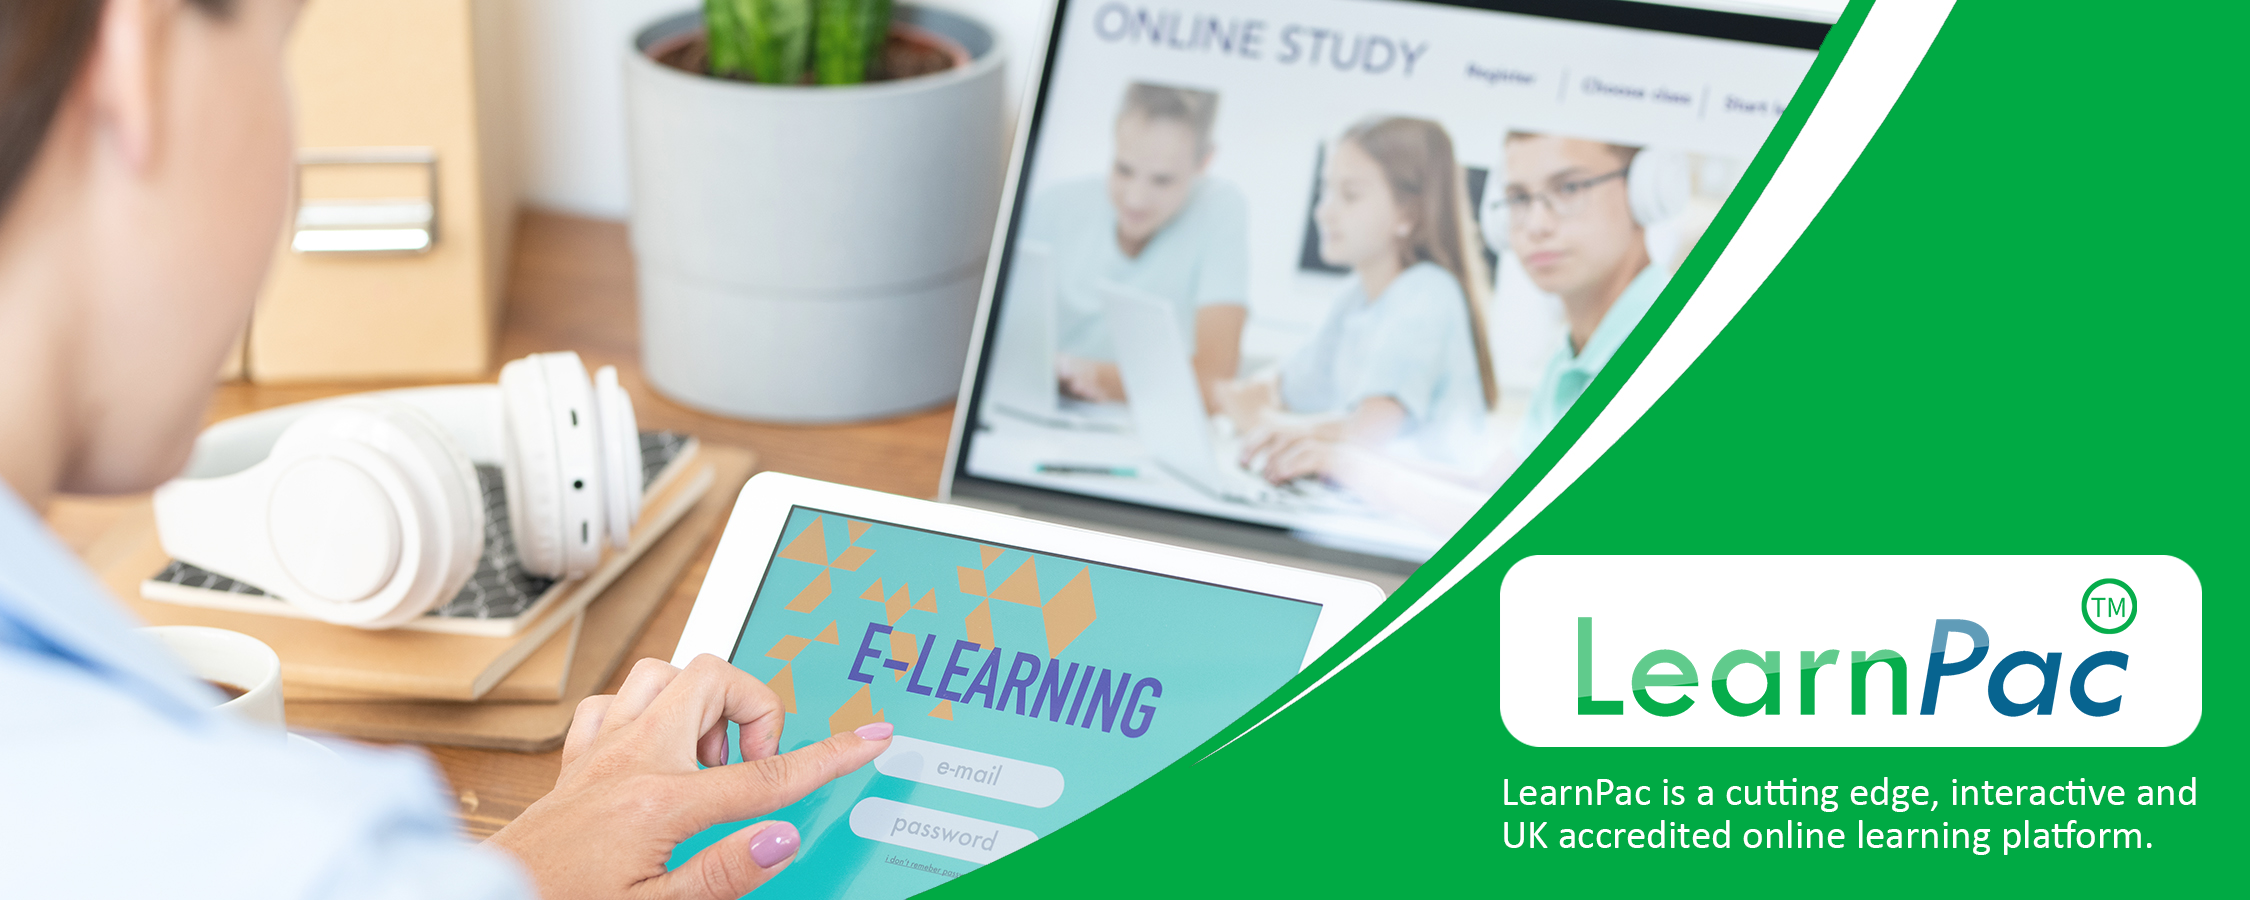 Marketing Basics Training - Online Learning Courses - E-Learning Courses - LearnPac Systems UK -